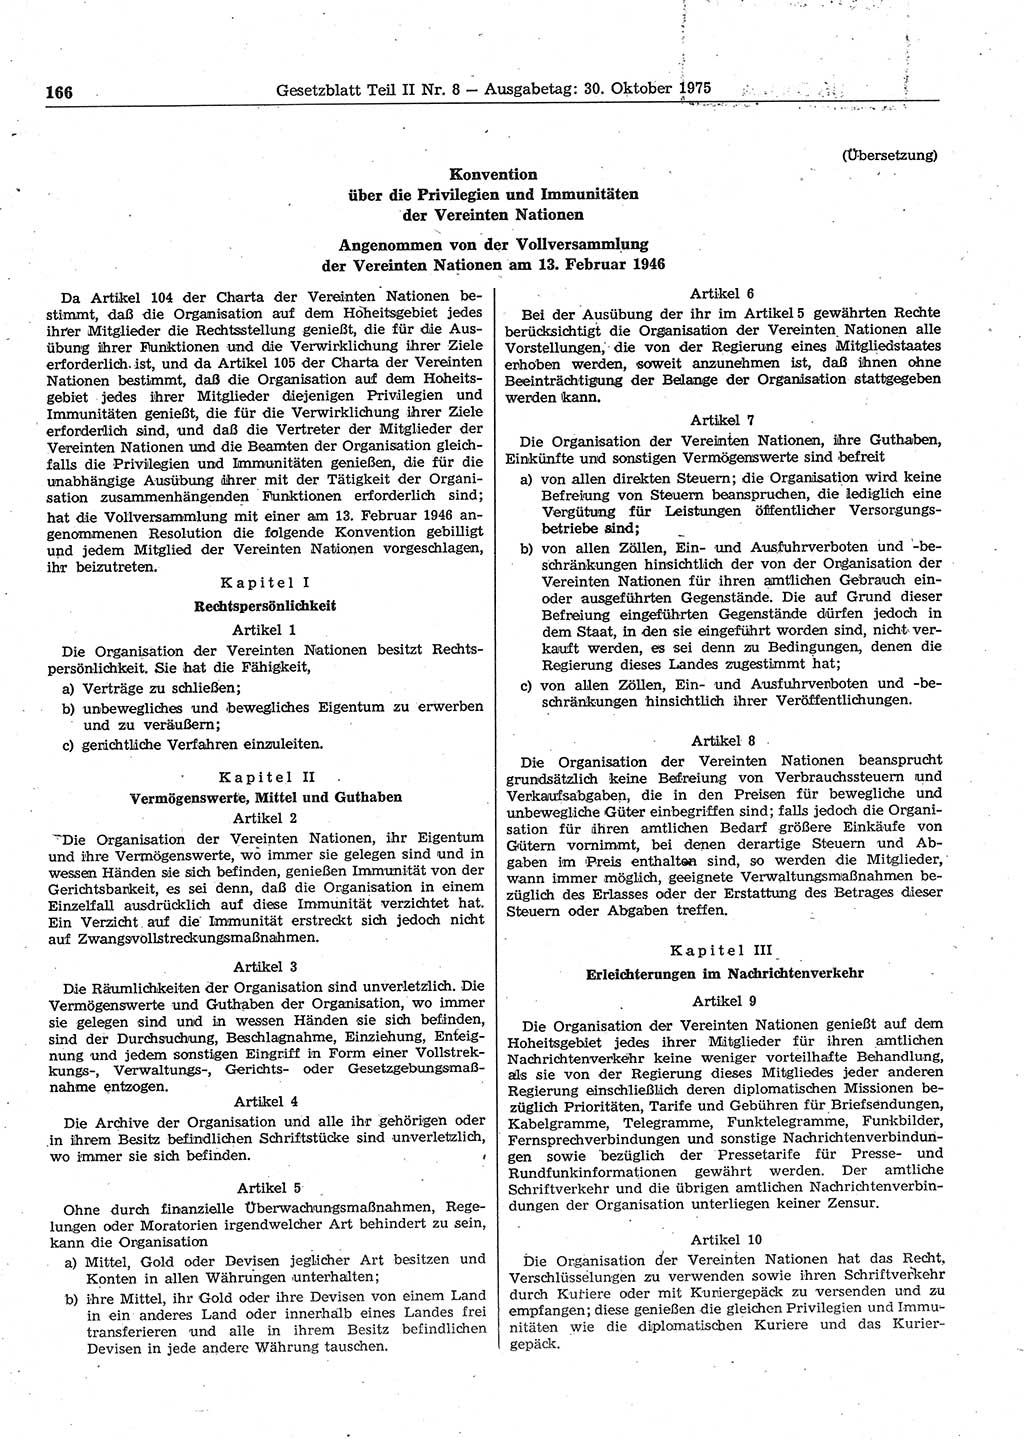 Gesetzblatt (GBl.) der Deutschen Demokratischen Republik (DDR) Teil ⅠⅠ 1975, Seite 166 (GBl. DDR ⅠⅠ 1975, S. 166)